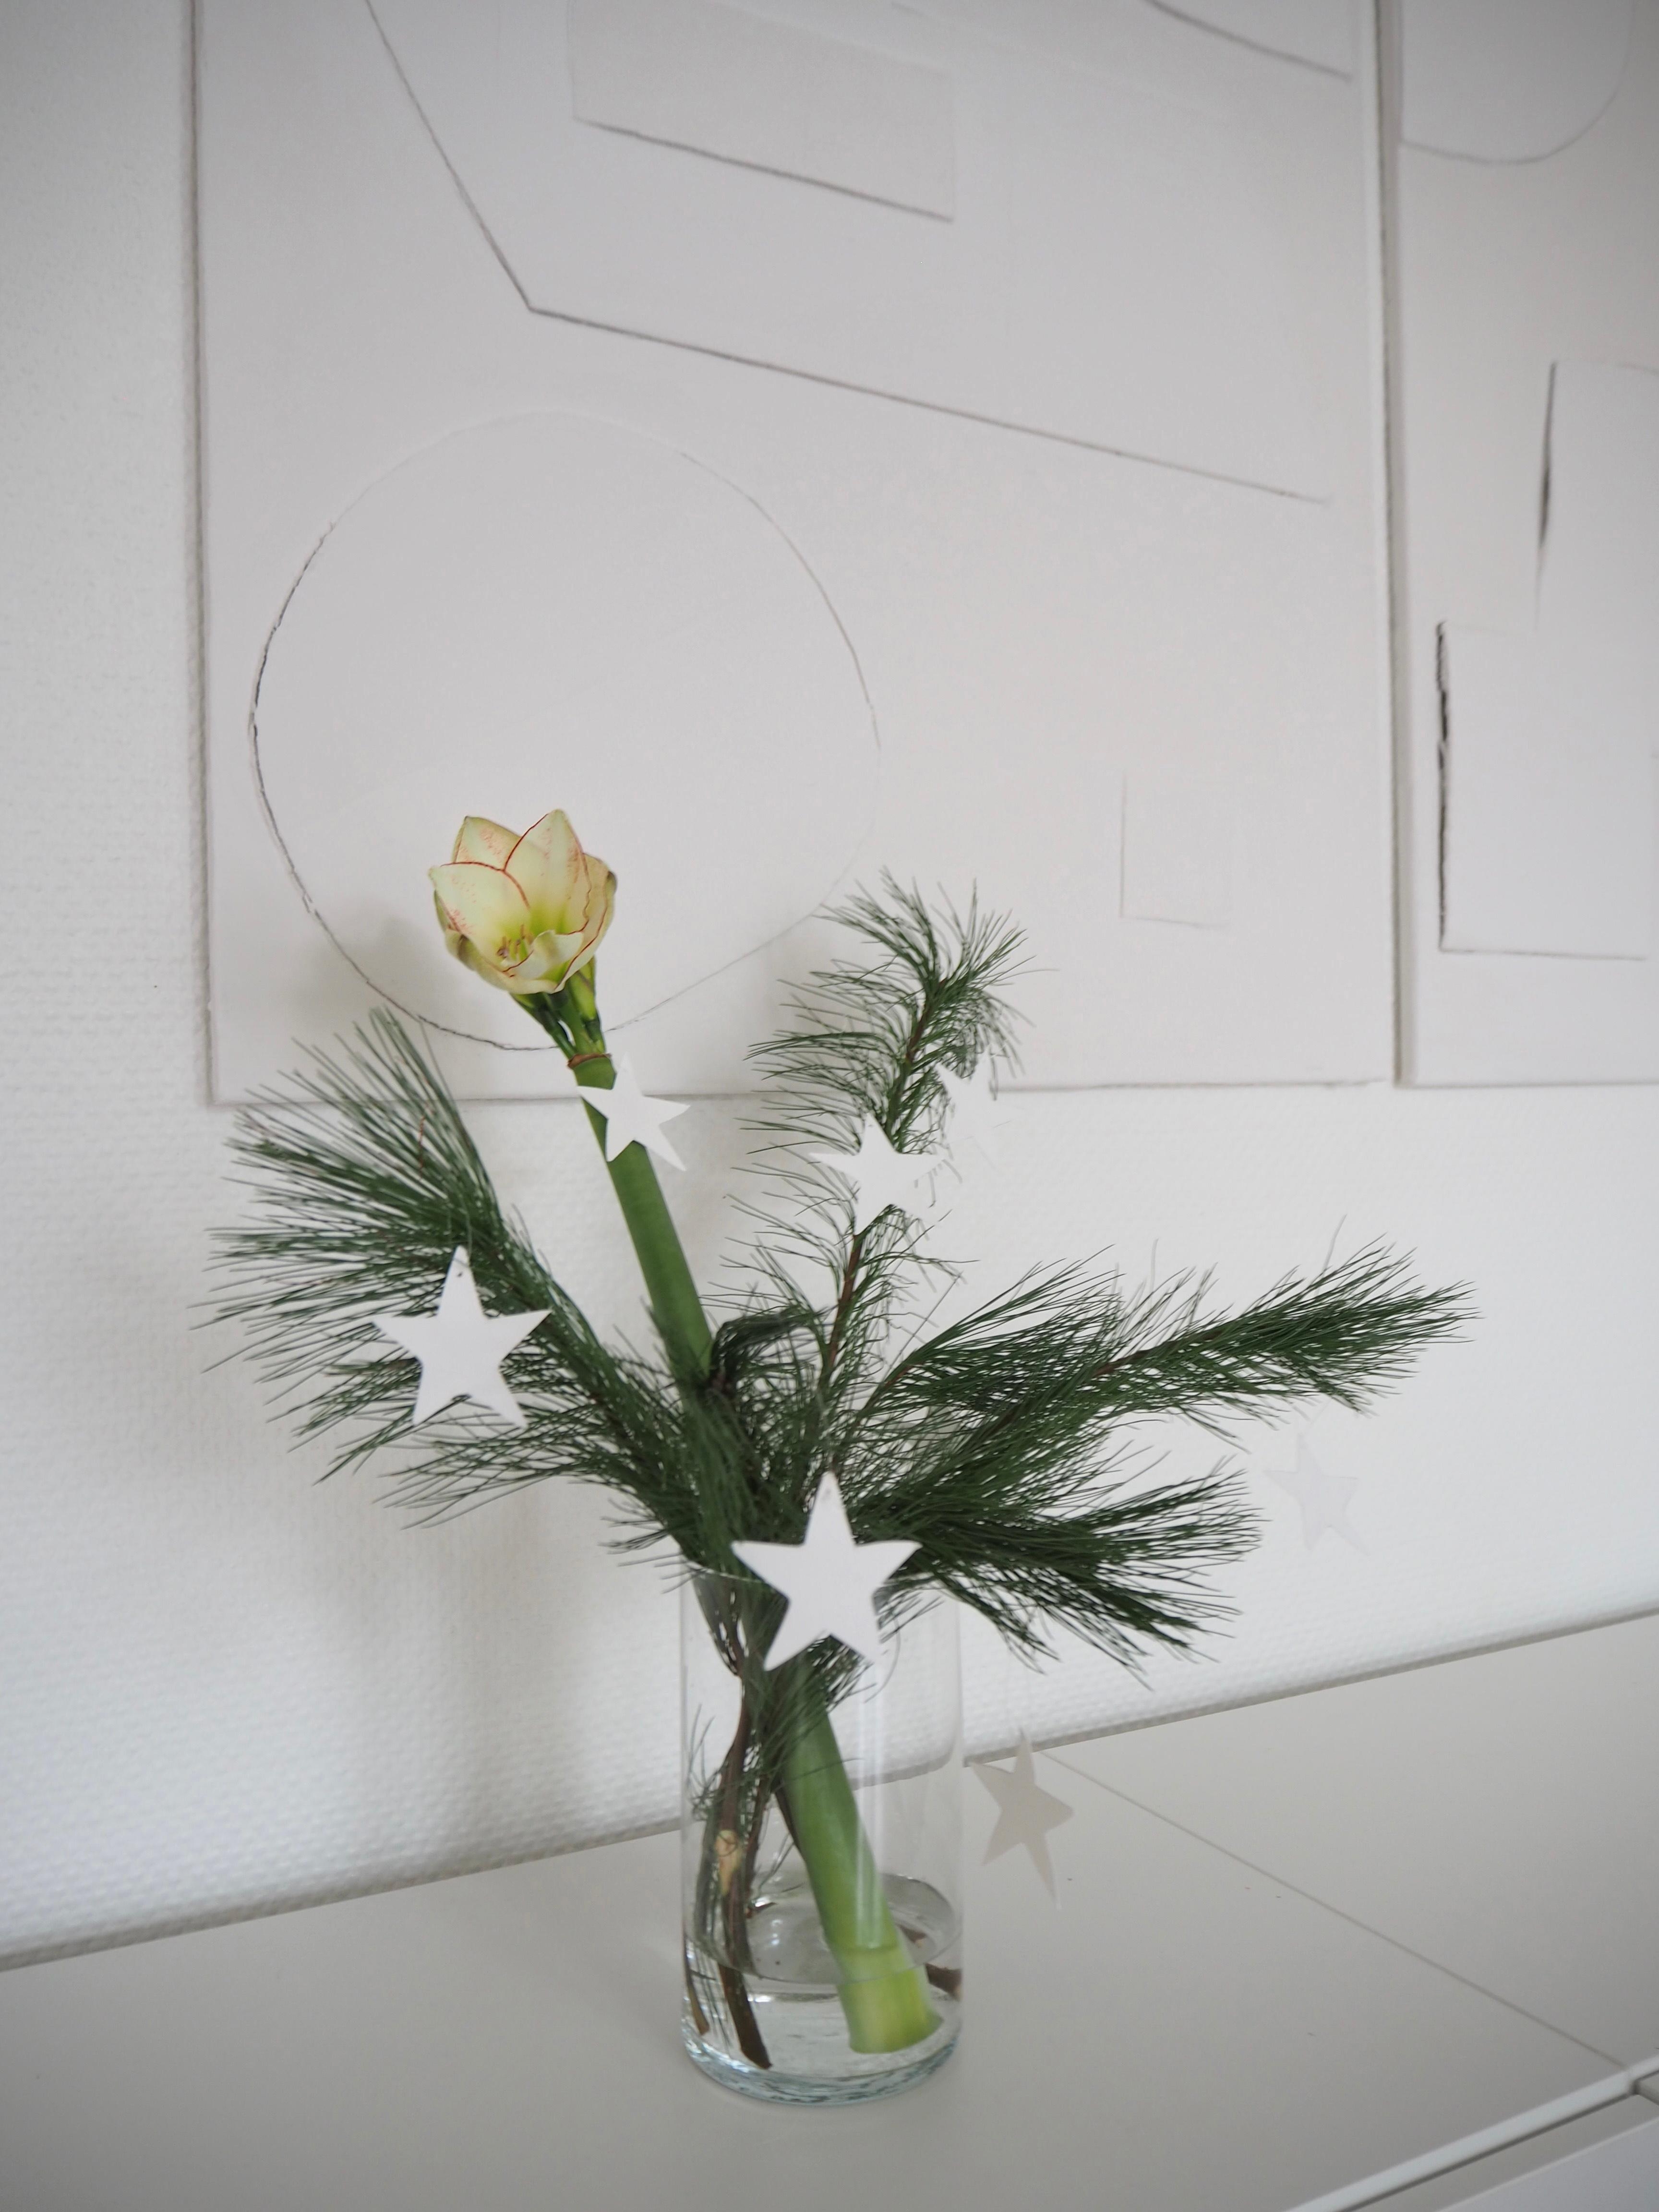 #amaryllis #blume #weihnachtsdeko #weihnachtlich #vase #sterne #papiersterne #weihnachtsstimmung #winterdiy